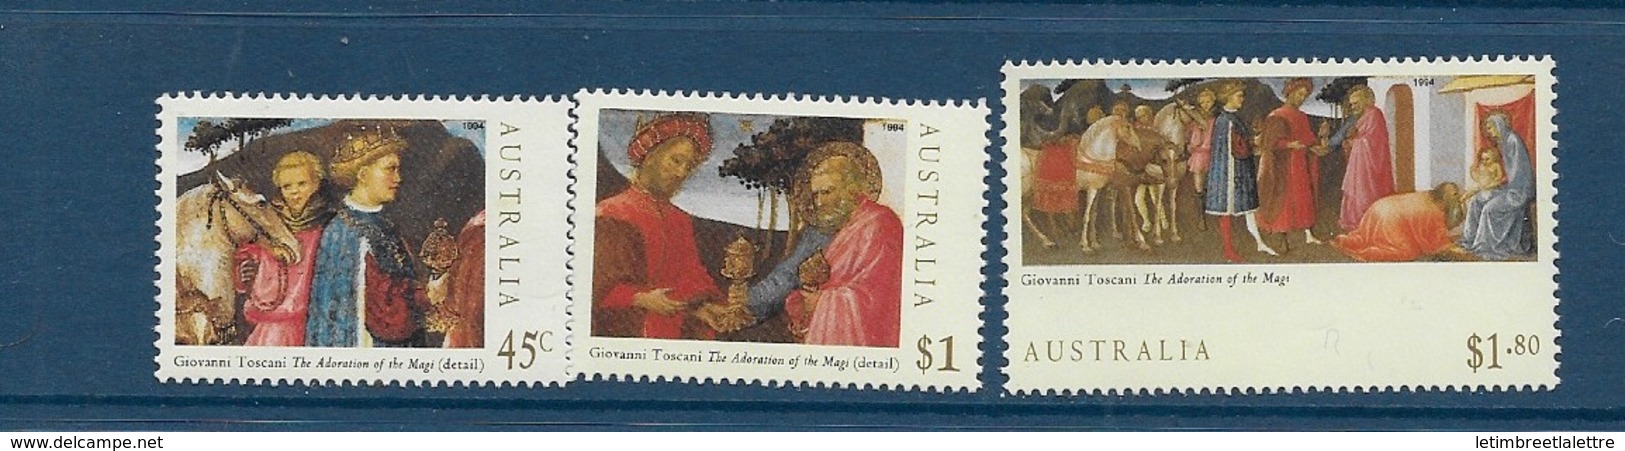 Australie N°1404 à 1406** - Mint Stamps